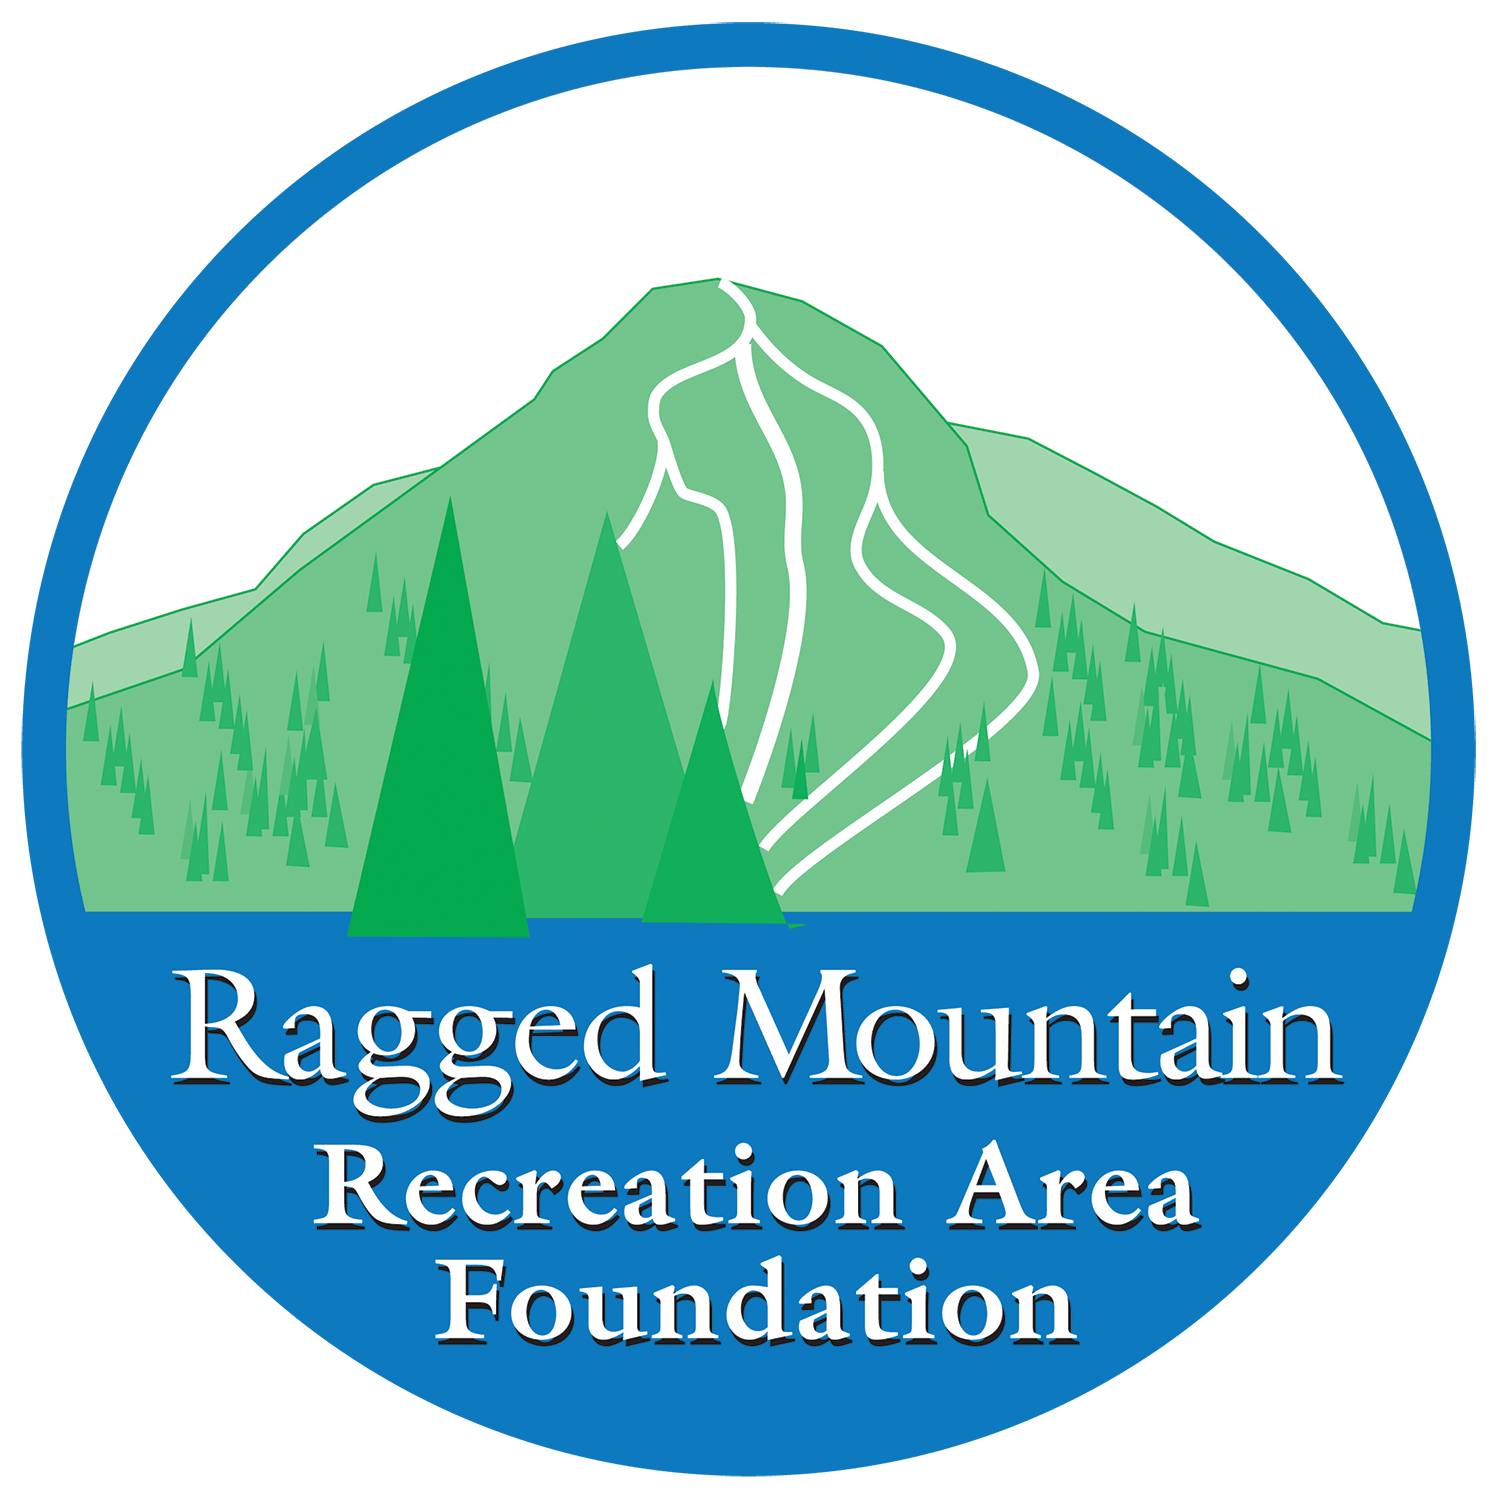 Mountain Recreation Logo - Ragged Mountain Foundation. Camden Snow Bowl